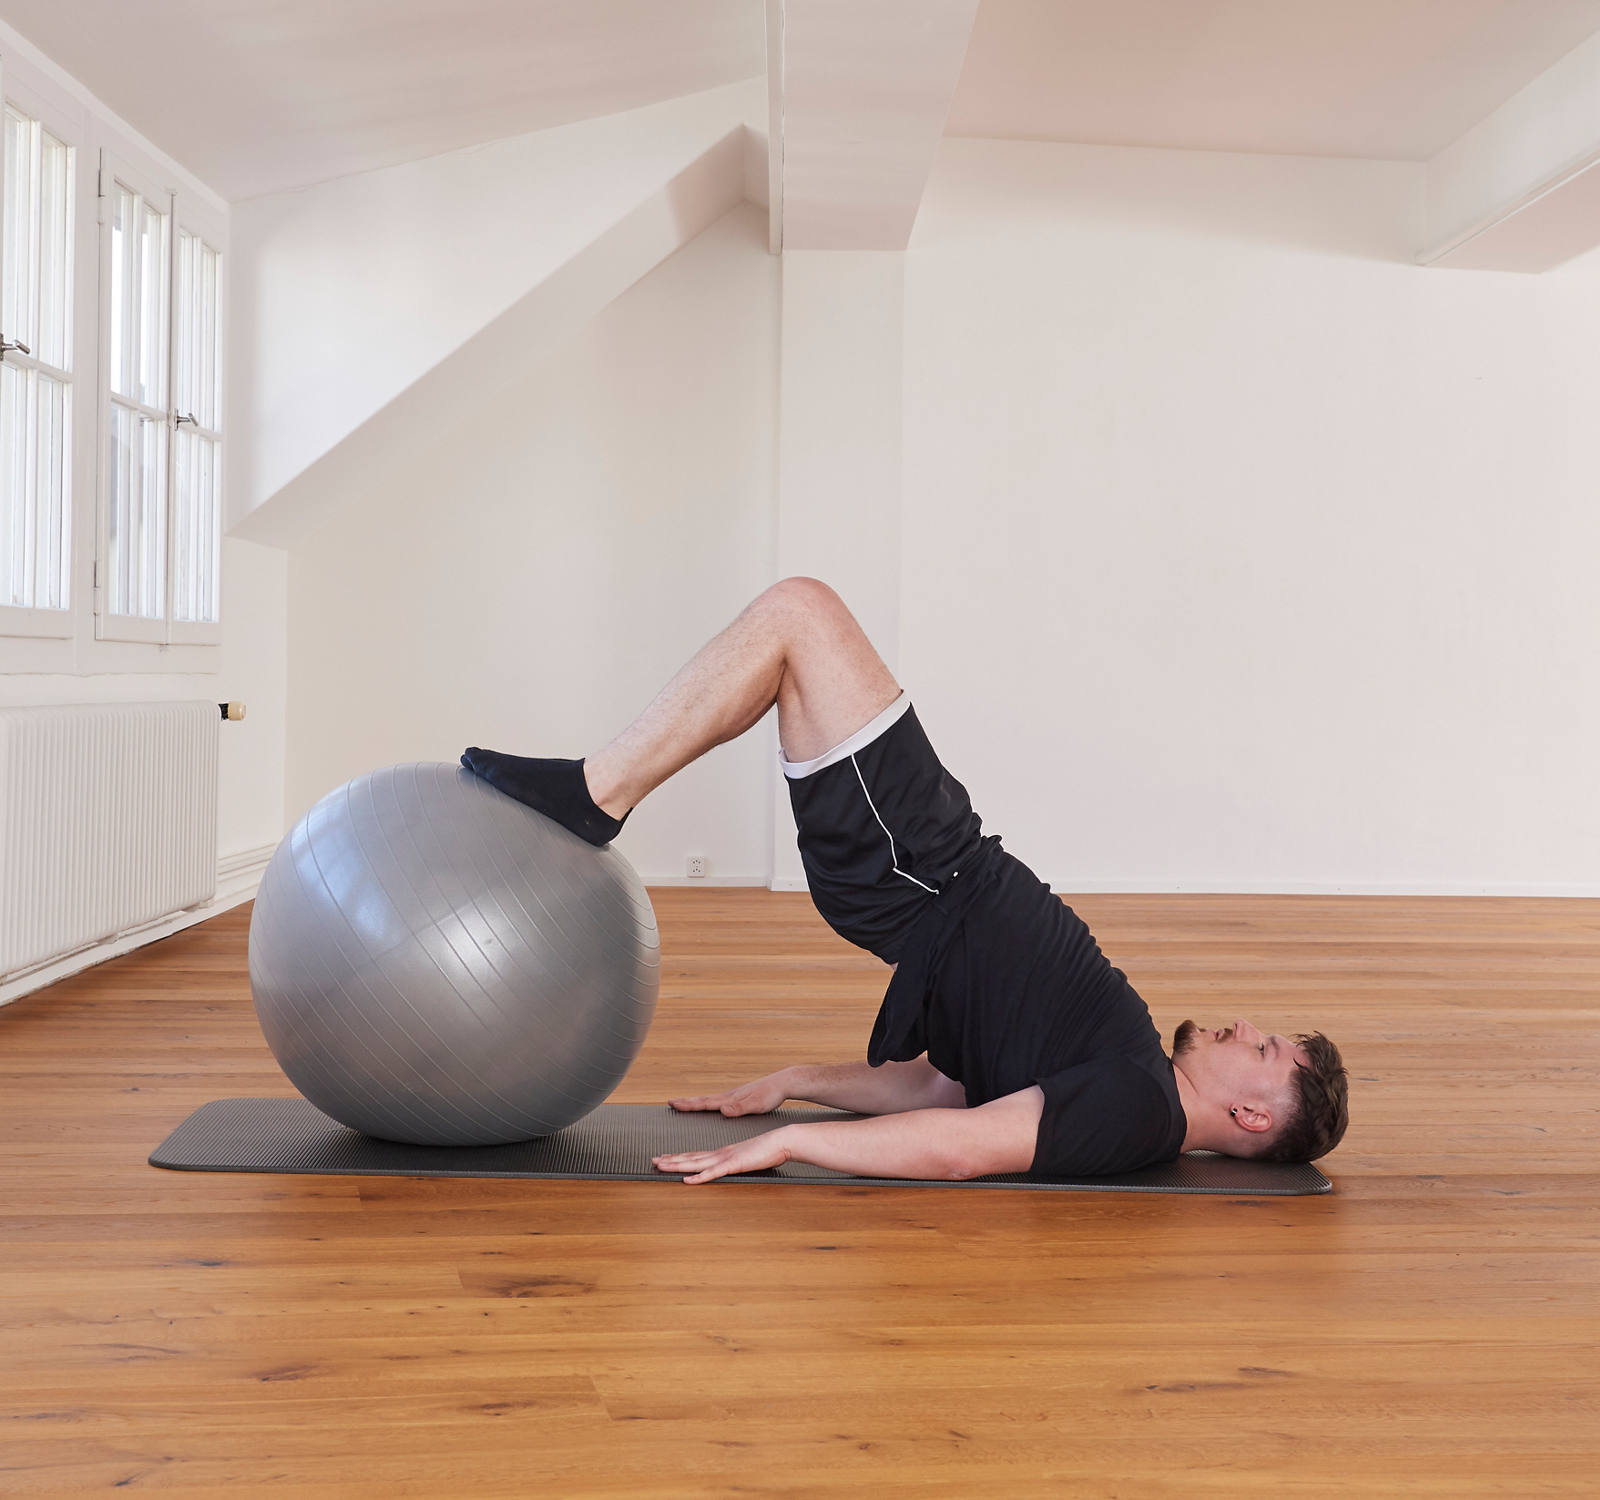 Gymnastikball – Beinrückseite und Po: Position 2